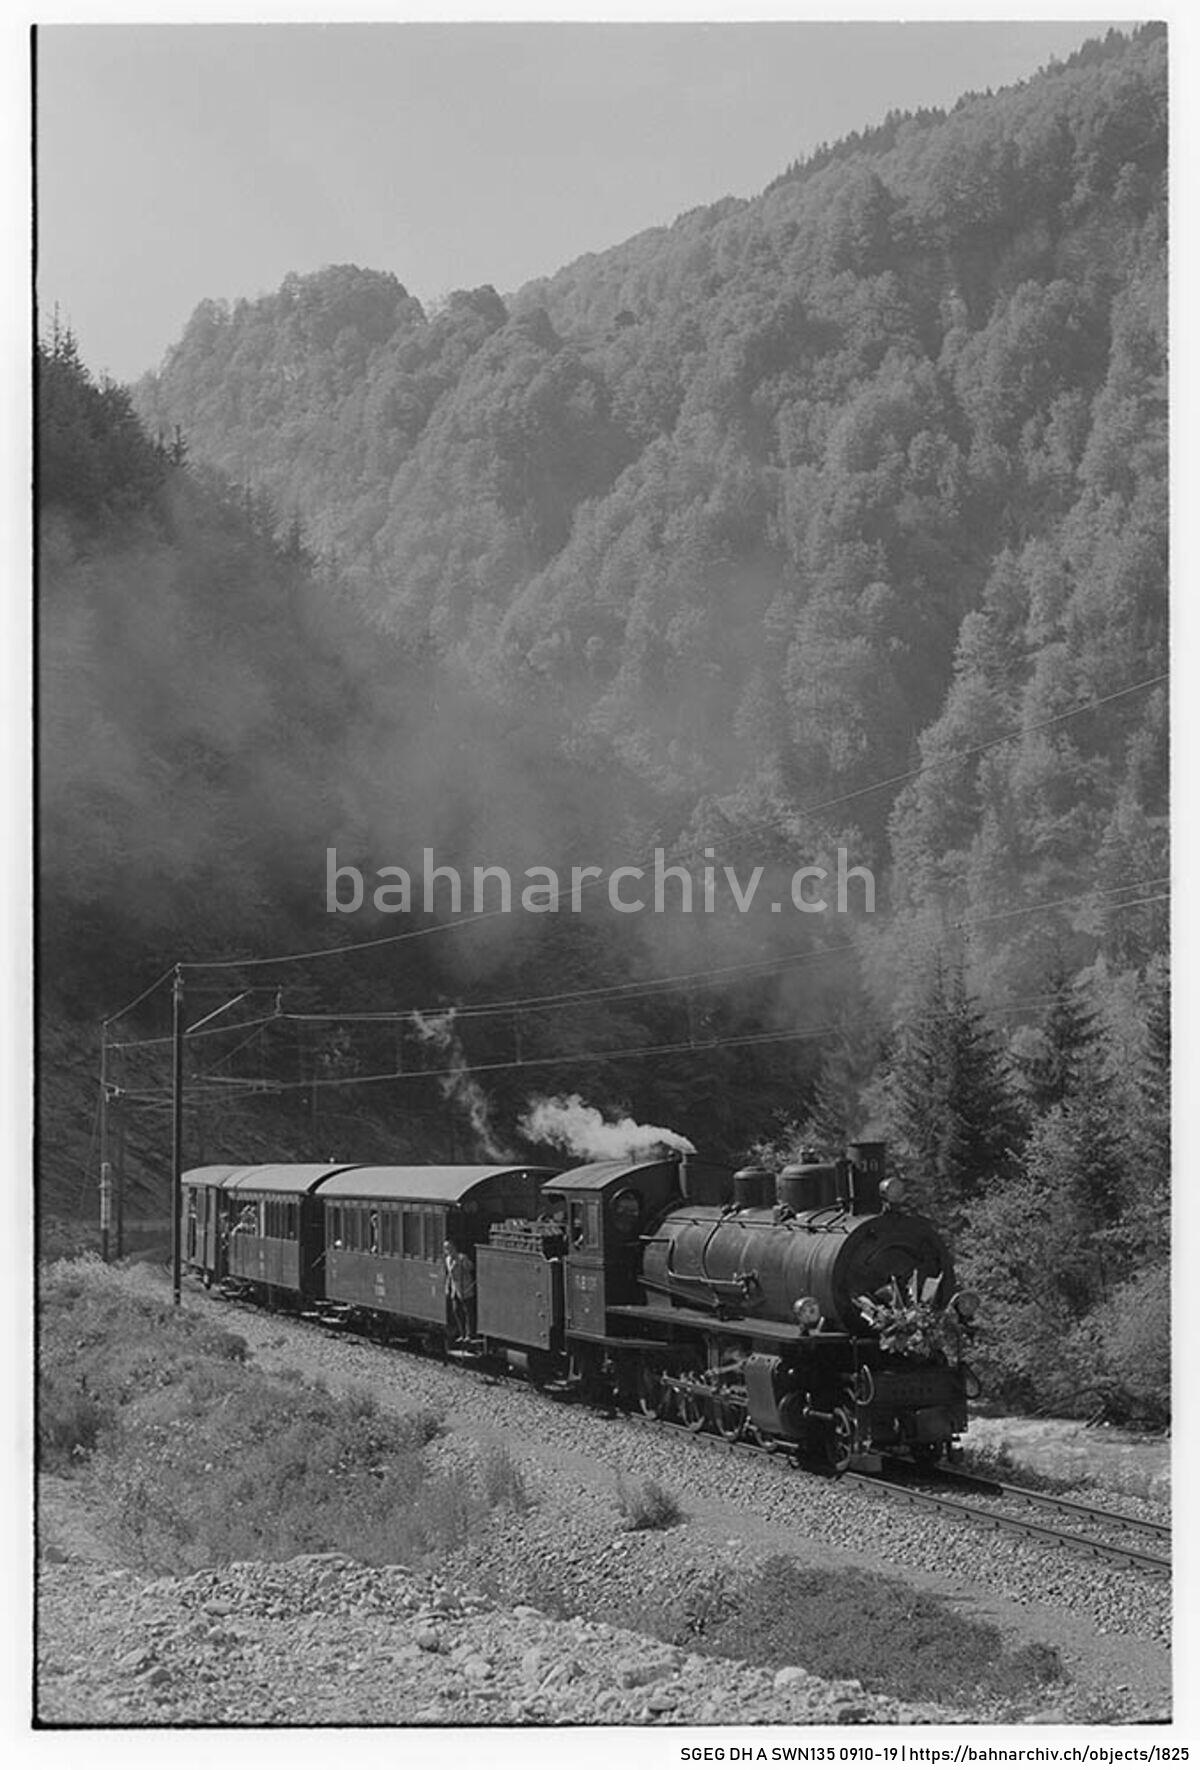 SGEG DH A SWN135 0910-19: Extrazug der Rhätischen Bahn (RhB) mit Dampflokomotive G 4/5 108, Personenwagen B2 2060 und A2 1102 sowie Gepäckwagen D2 4052 zwischen Fideris und Küblis